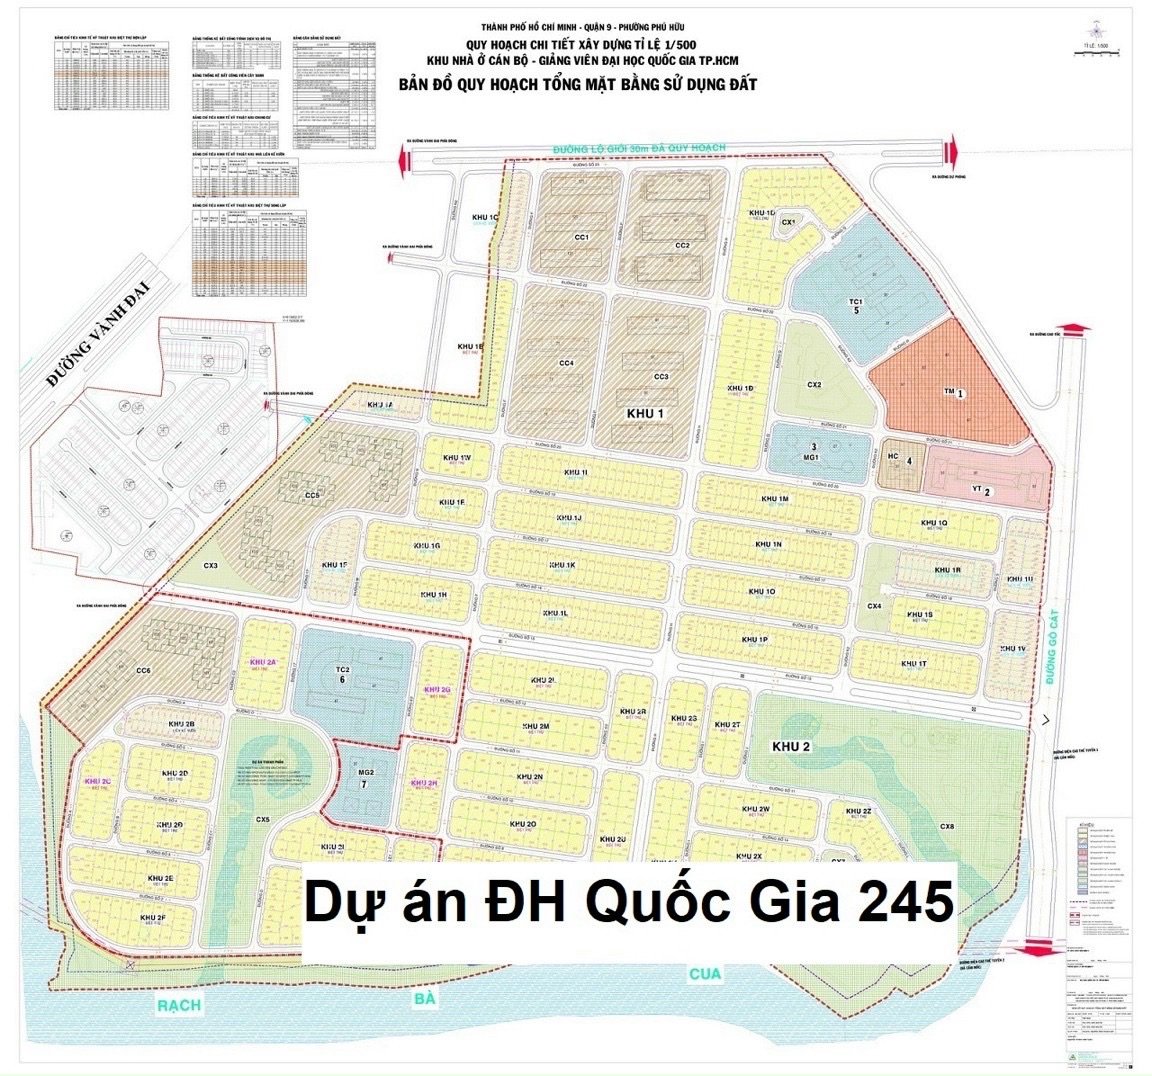 Mua bán nhanh đất nền dự án ĐH Quốc Gia 245 phường Phú Hữu Quận 9 Tp .Thủ Đức. Chuẩn bị ra sổ